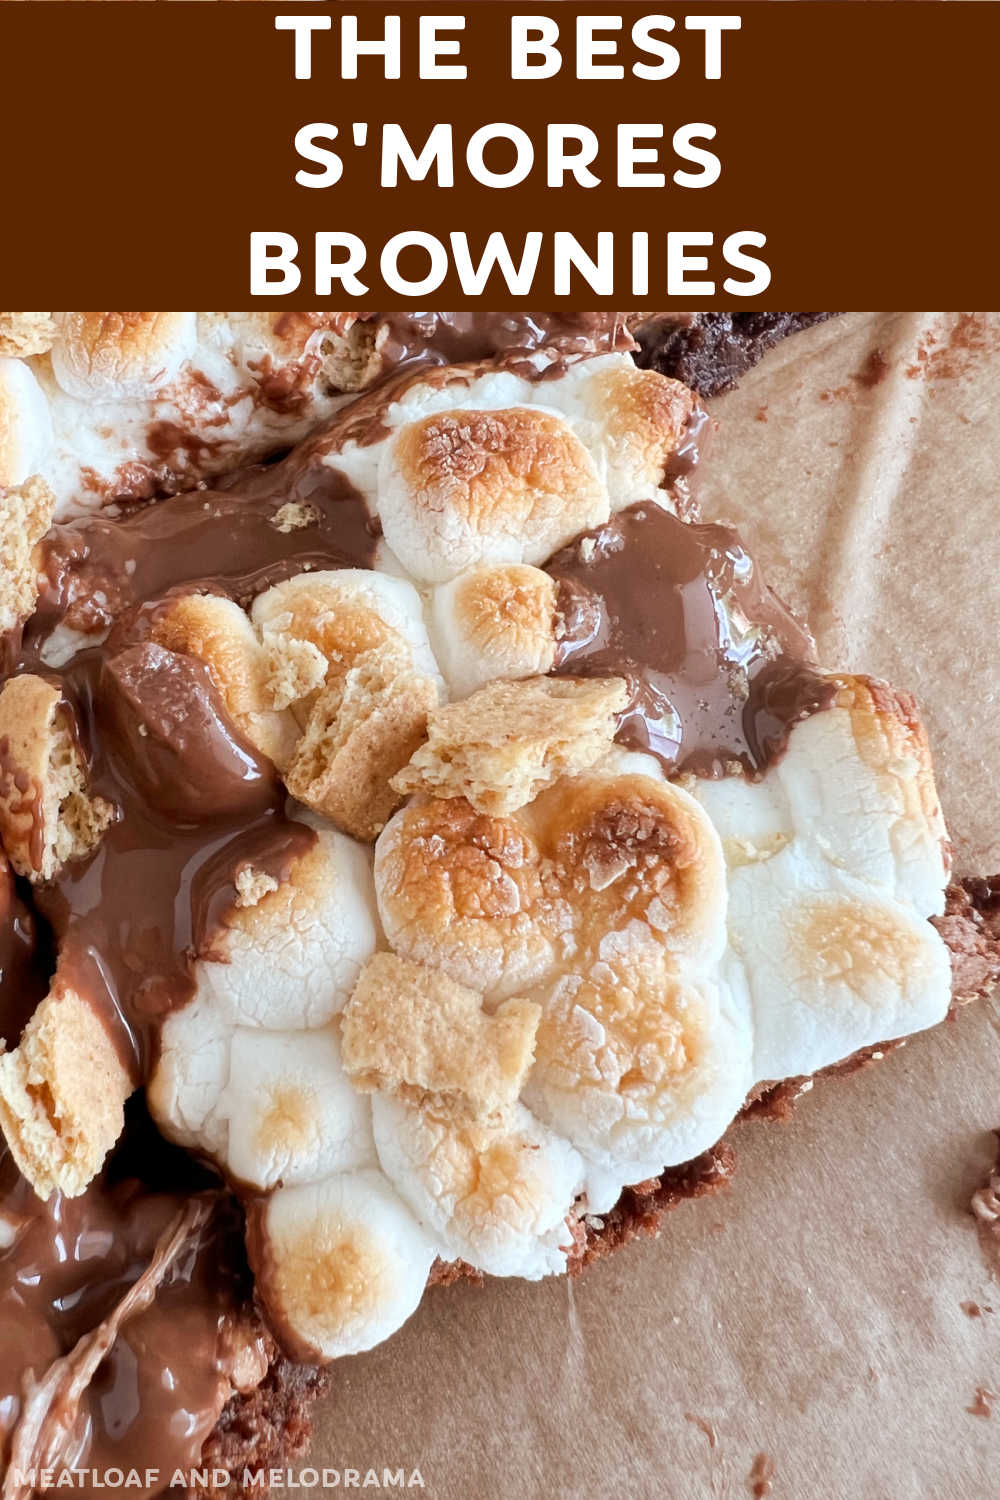 Αυτή η συνταγή S'mores Brownies φτιάχνει φτηνά μπράουνις με φρυγανισμένα marshmallows, κράκερ Graham και μπάρες σοκολάτας.  Ένα υπέροχο γλυκό που μπορείτε να φτιάξετε σε ένα μπολ.  Όλη η οικογένεια λατρεύει αυτά τα σπιτικά μπράουνις!  μέσω @meamel